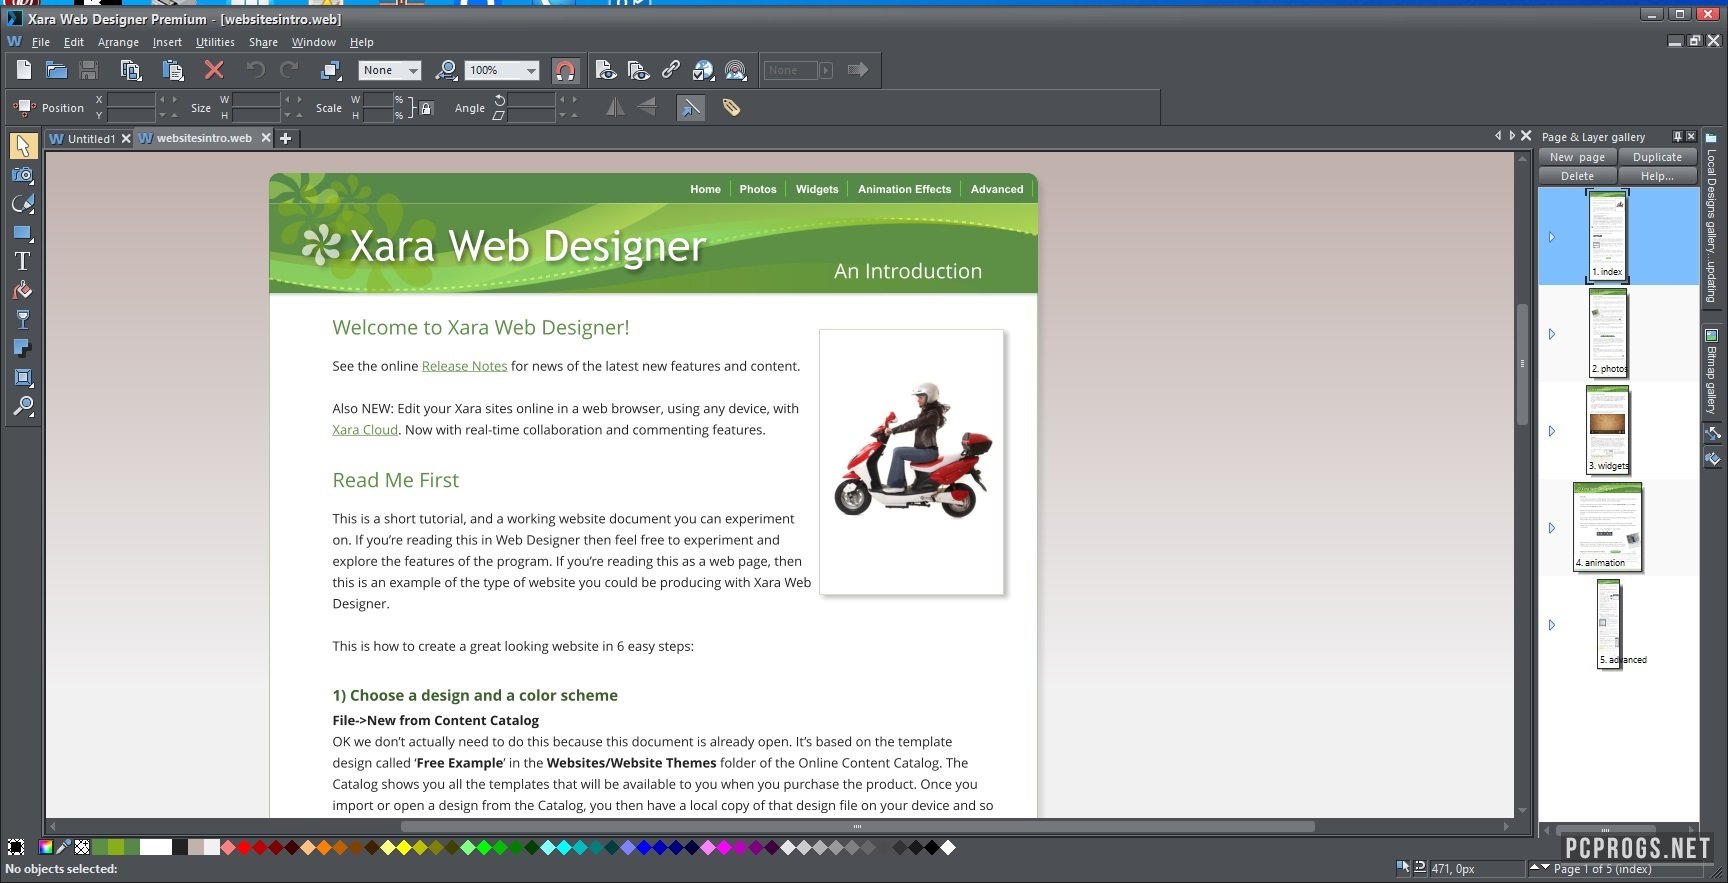 Xara Web Designer Premium 23.2.0.67158 instal the new for windows